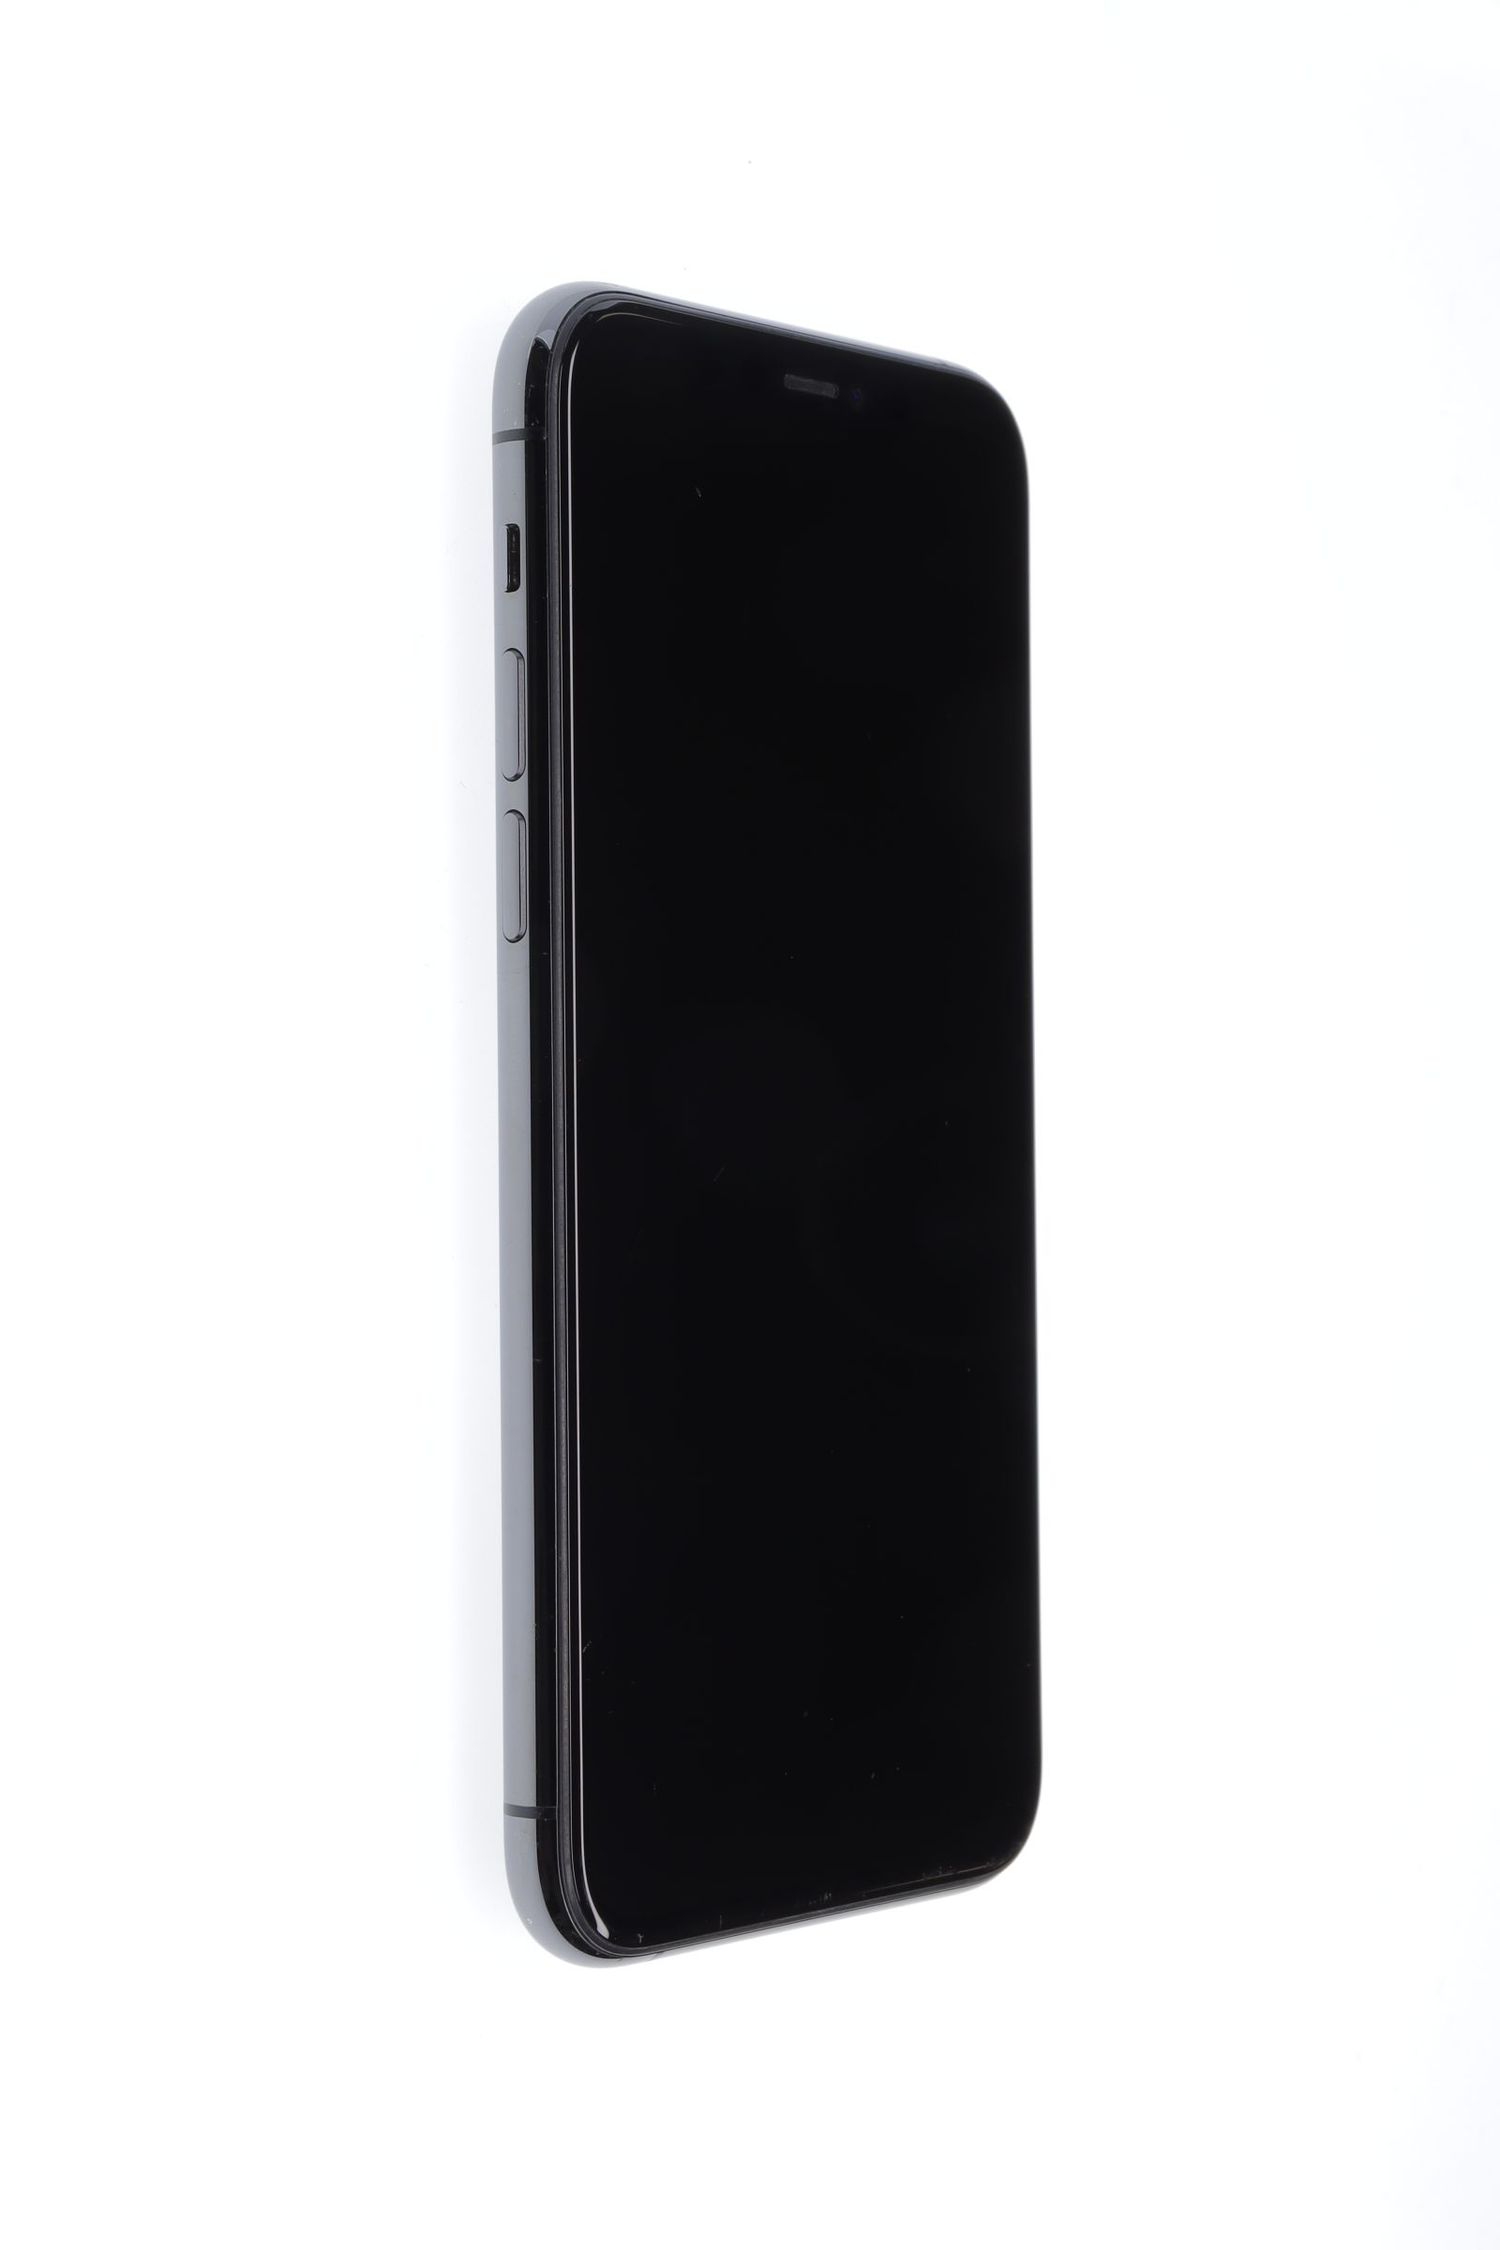 Κινητό τηλέφωνο Apple iPhone 11 Pro, Space Gray, 64 GB, Excelent